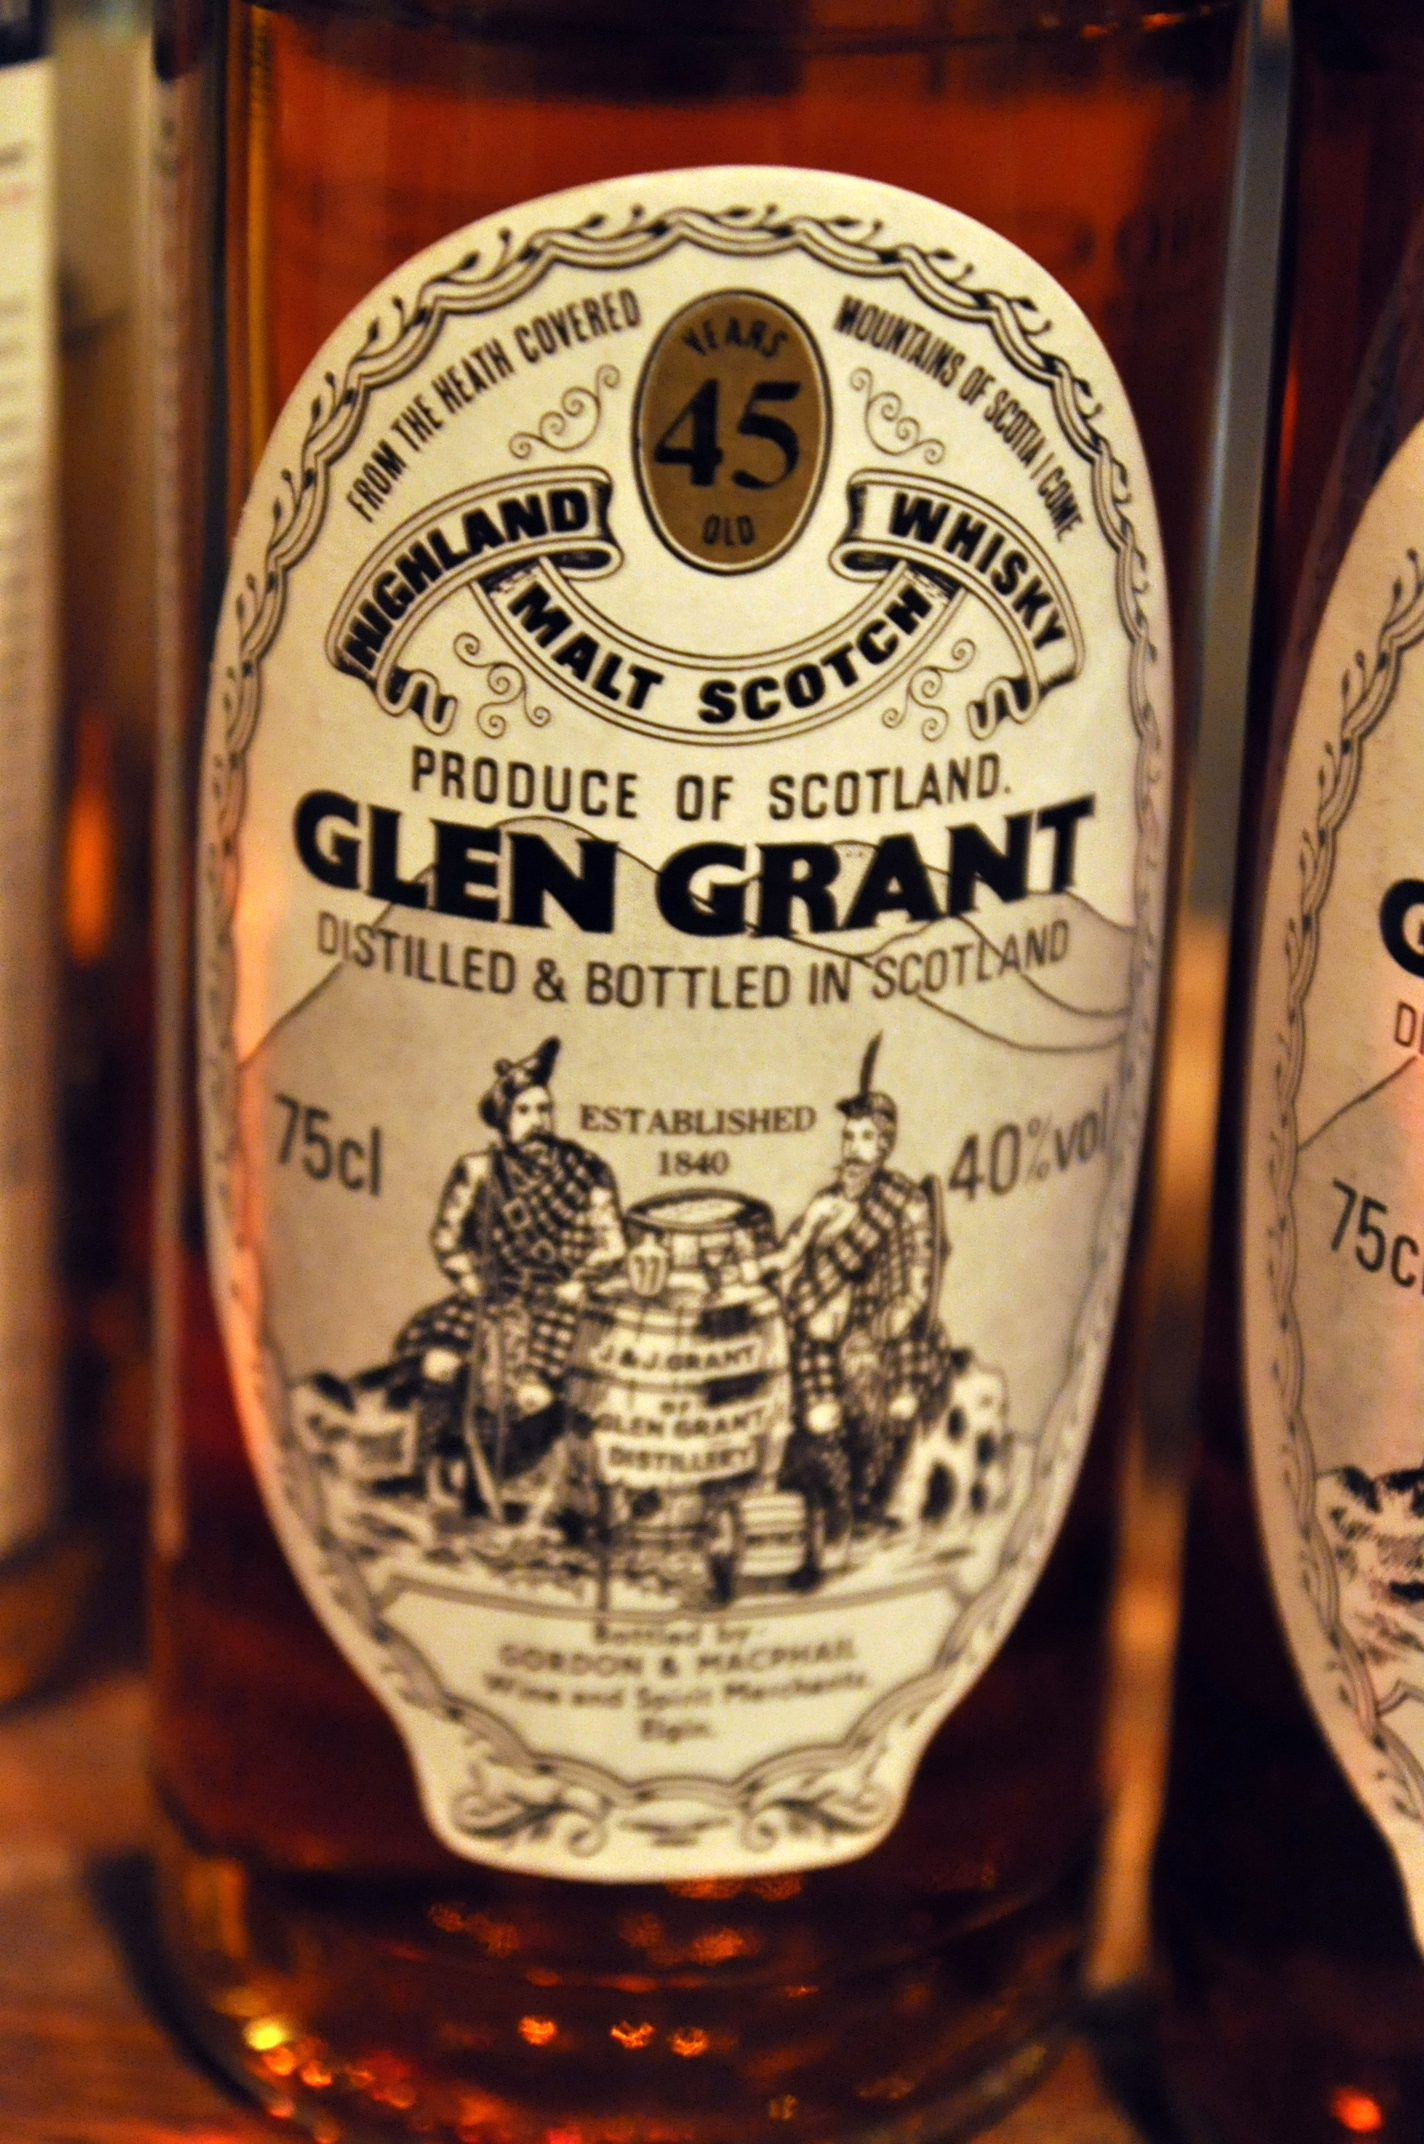 グレングラント Glen Grant 45yo (40%, G&M Licensed bottling, 75cl)